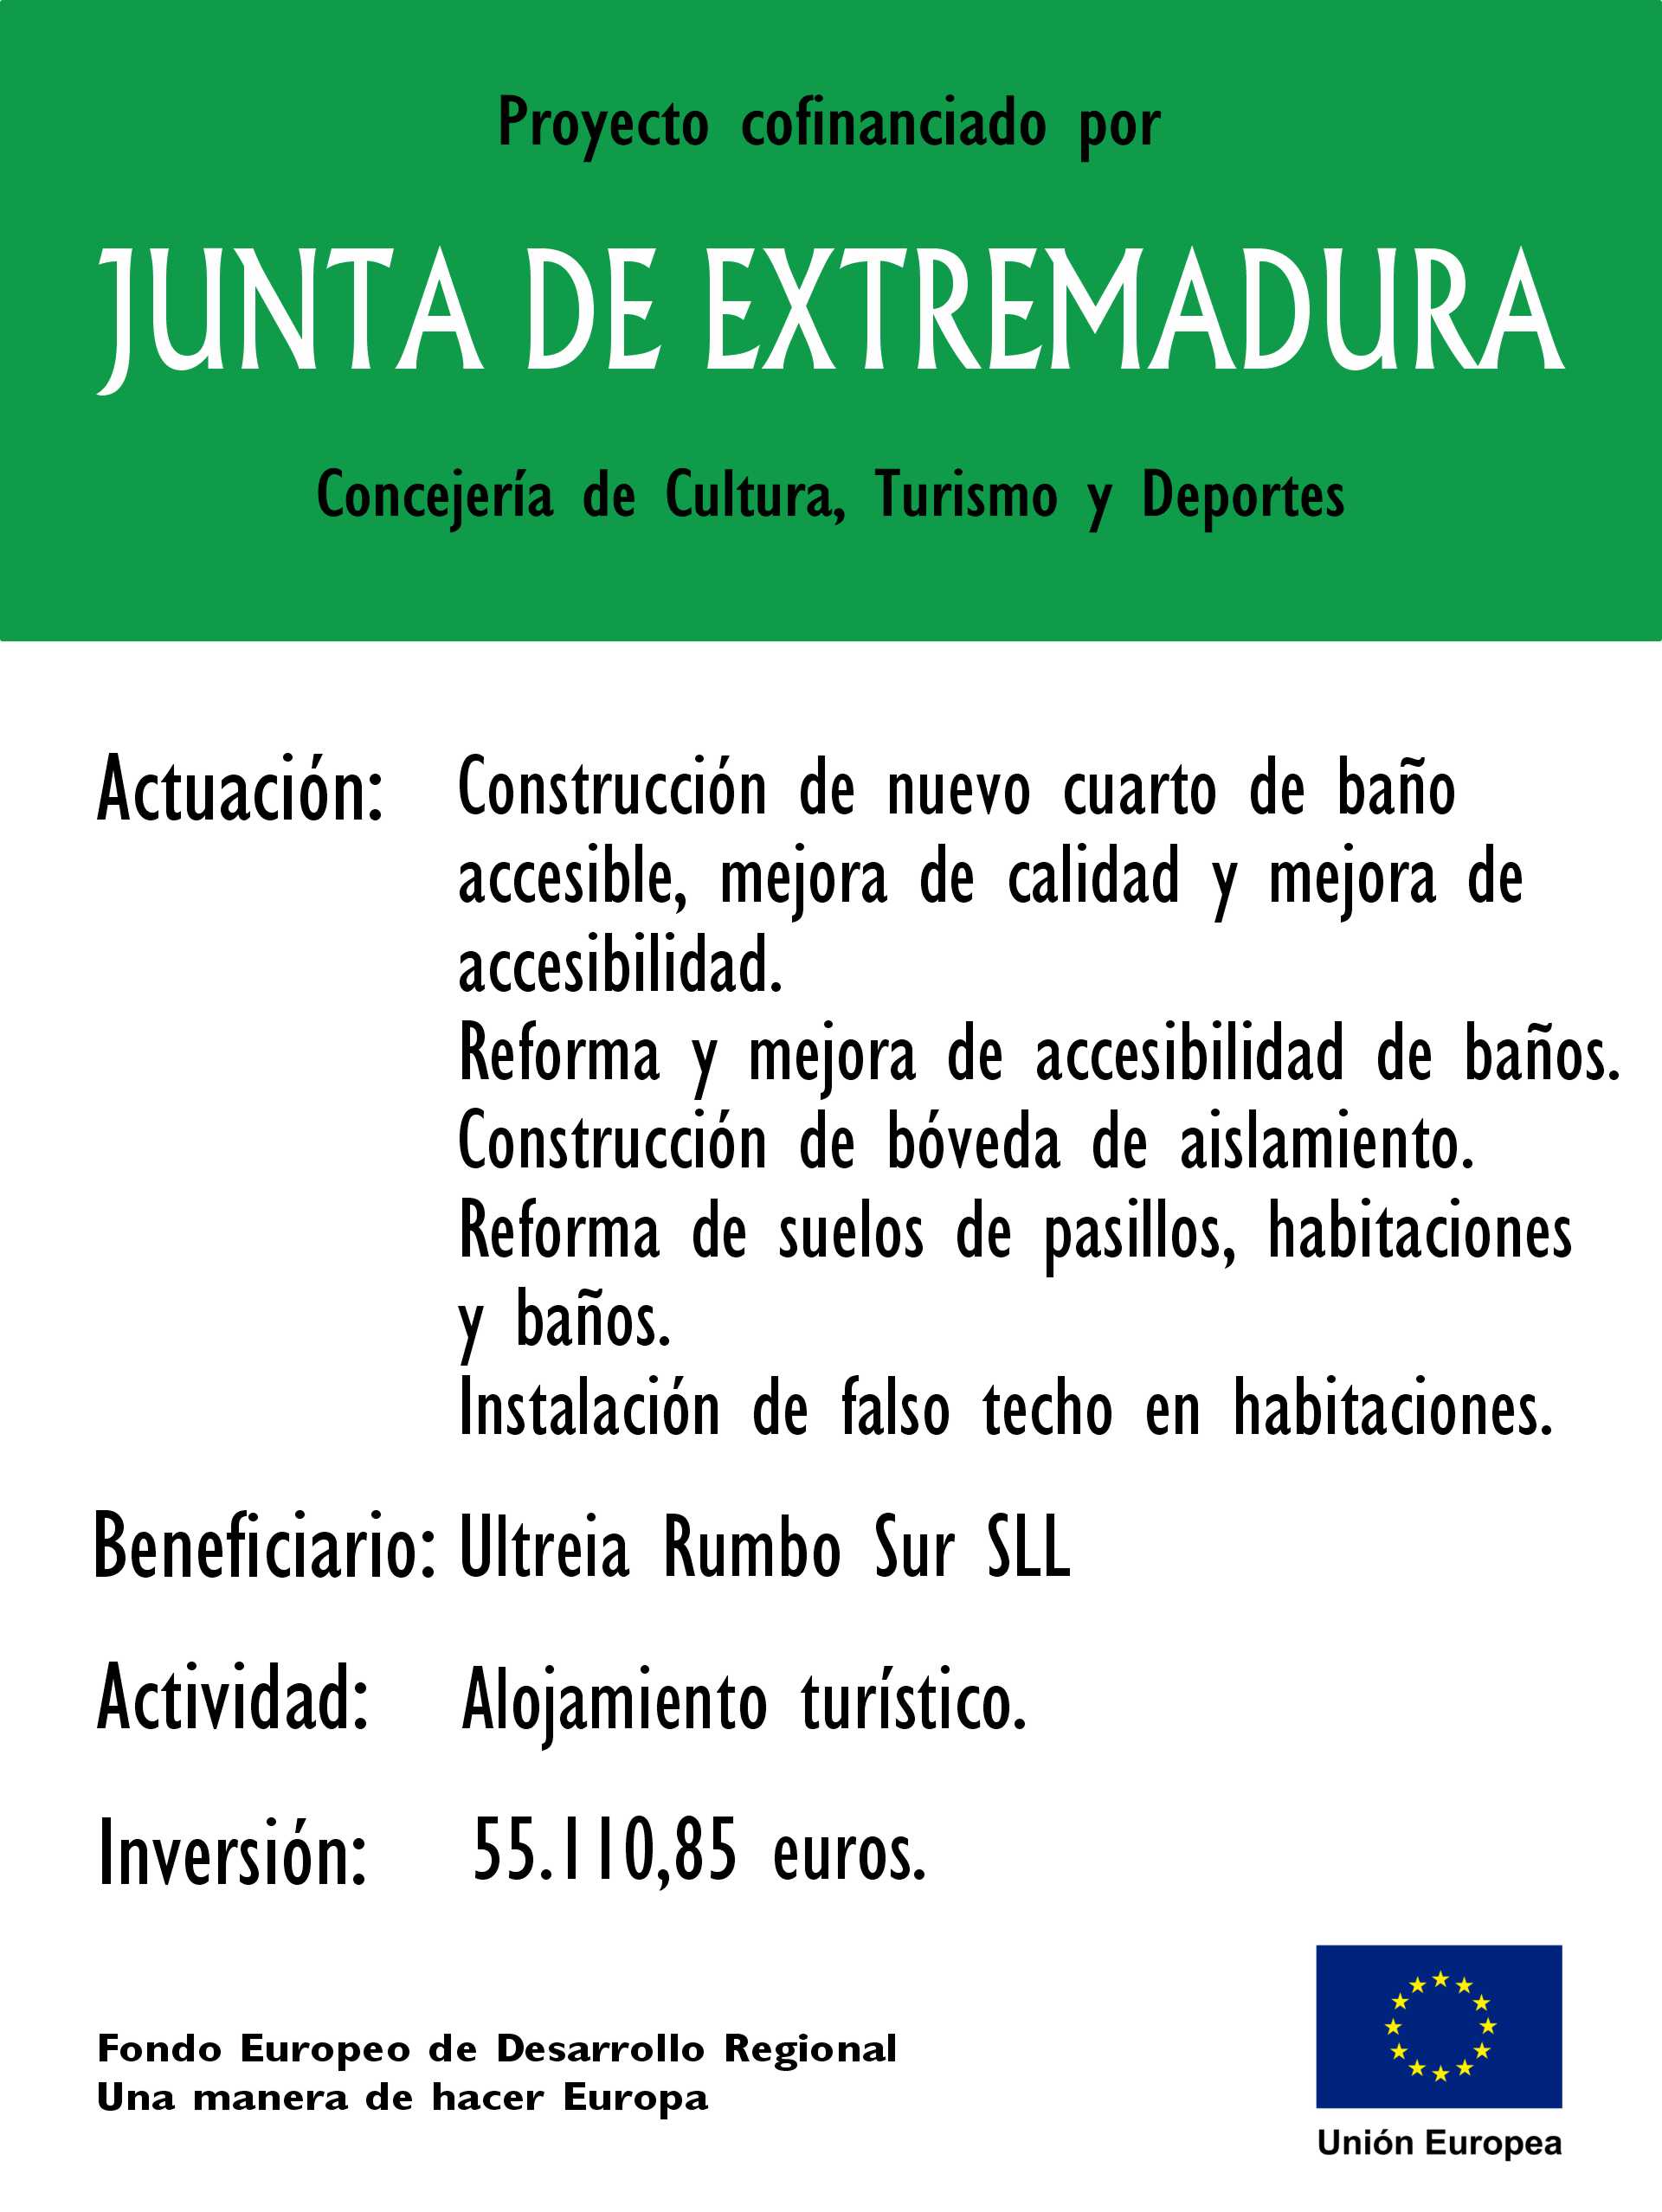 Proyecto Cofinanciado CR Junta de Extremadura 2023 Albergue Turístico